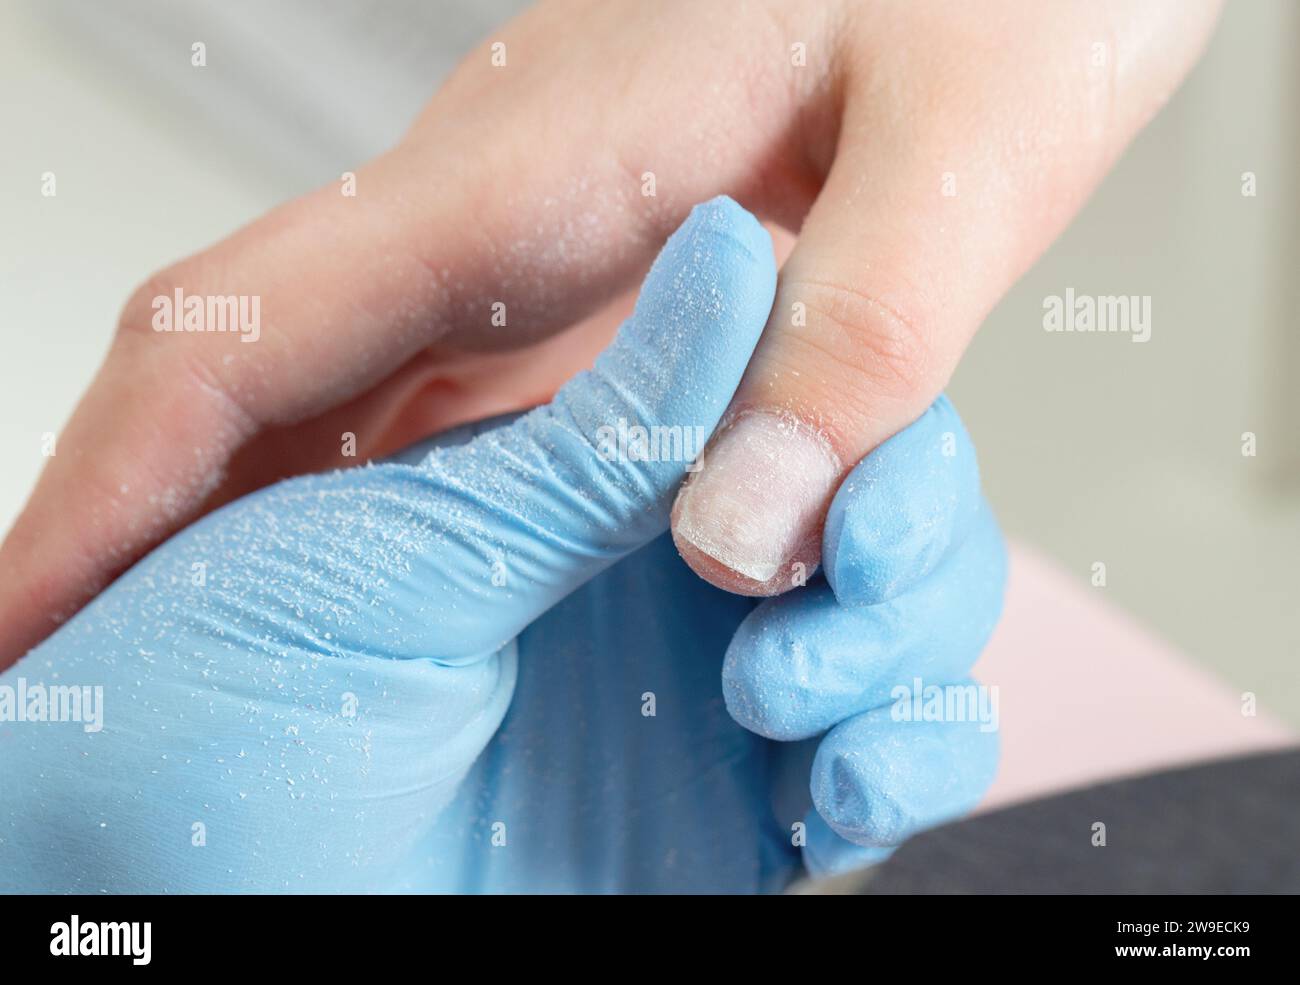 Processo di manicure nel salone di bellezza. Manicurista in guanti blu tiene il dito con un'unghia lucida. Foto Stock